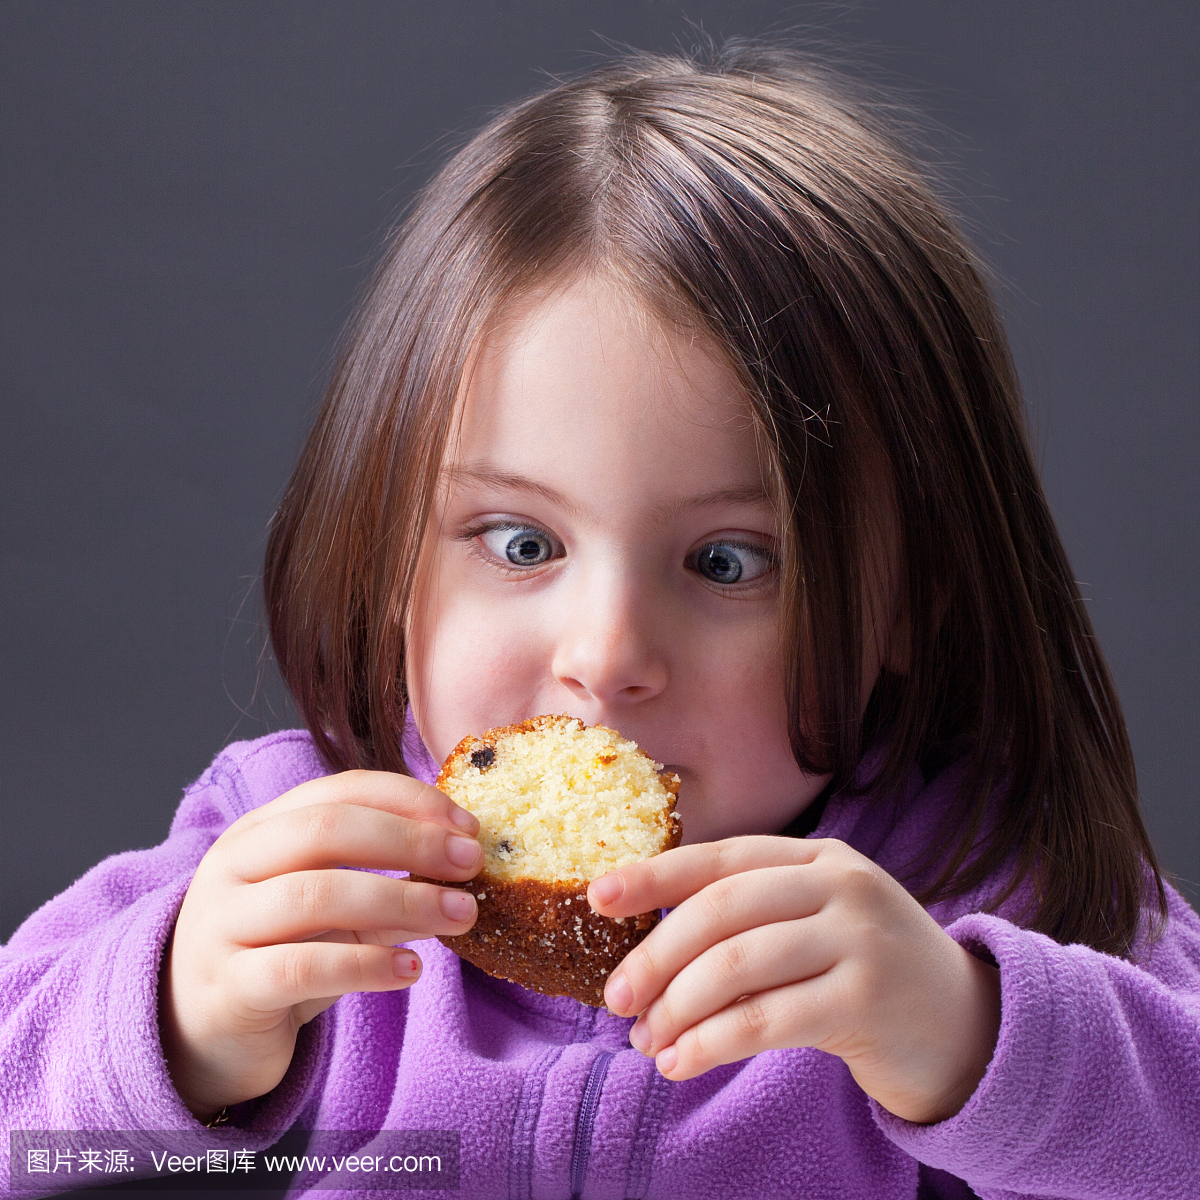 饥肠辘辘的饥饿的小女孩吃了一块蛋糕